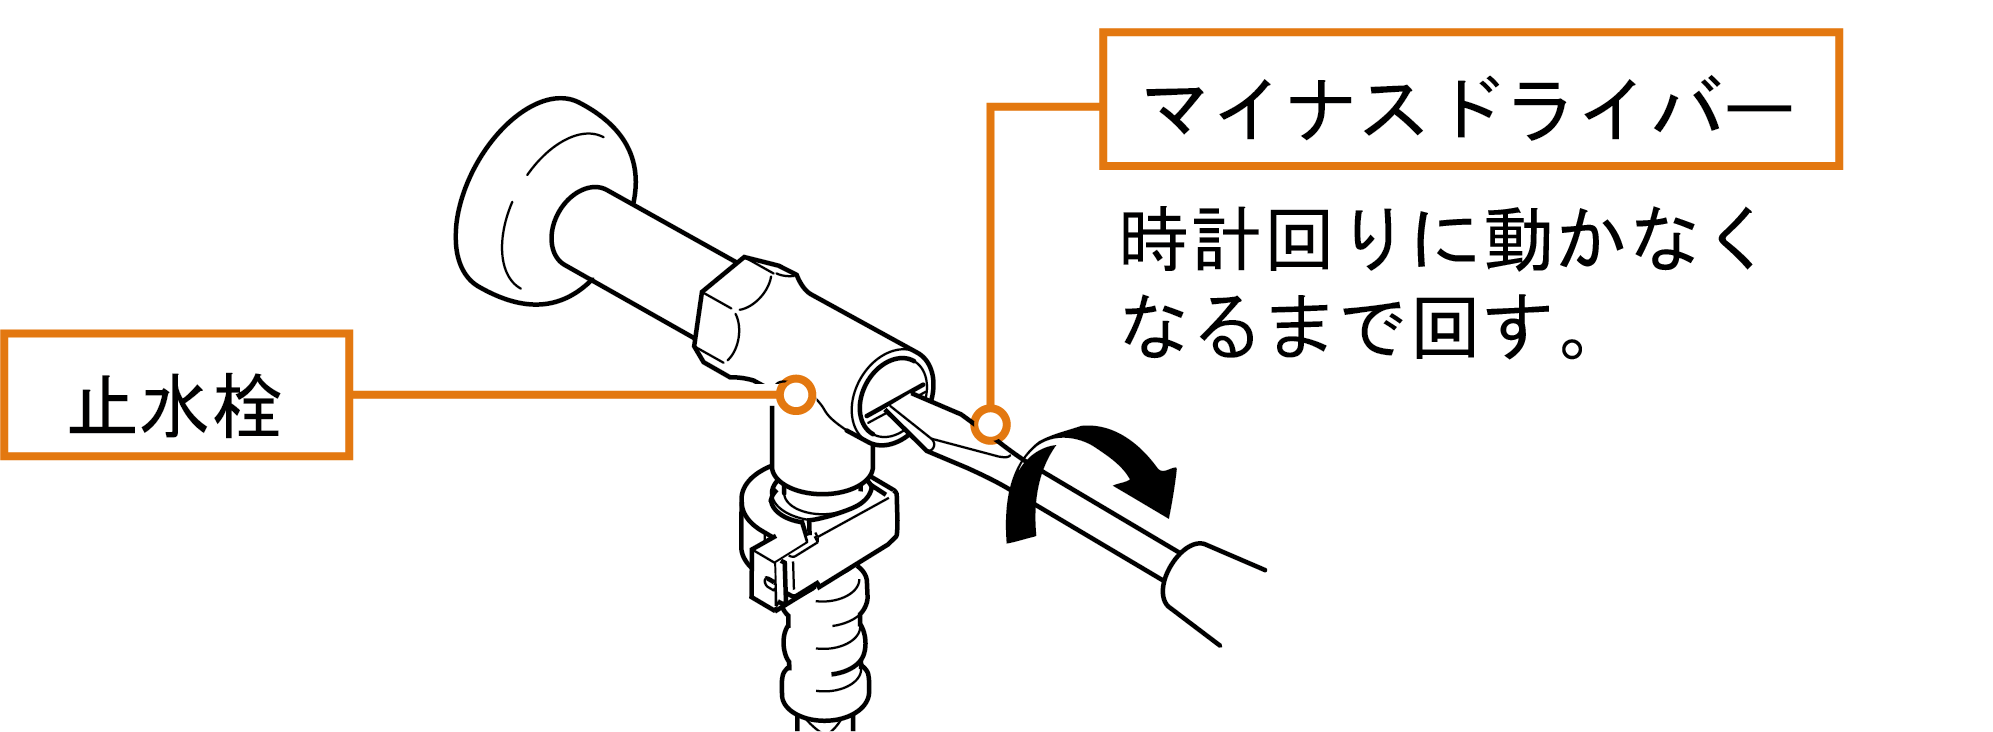 ストレーナーを掃除してください。ハンドルがない場合 止水栓を閉めて、給水を止めてください。